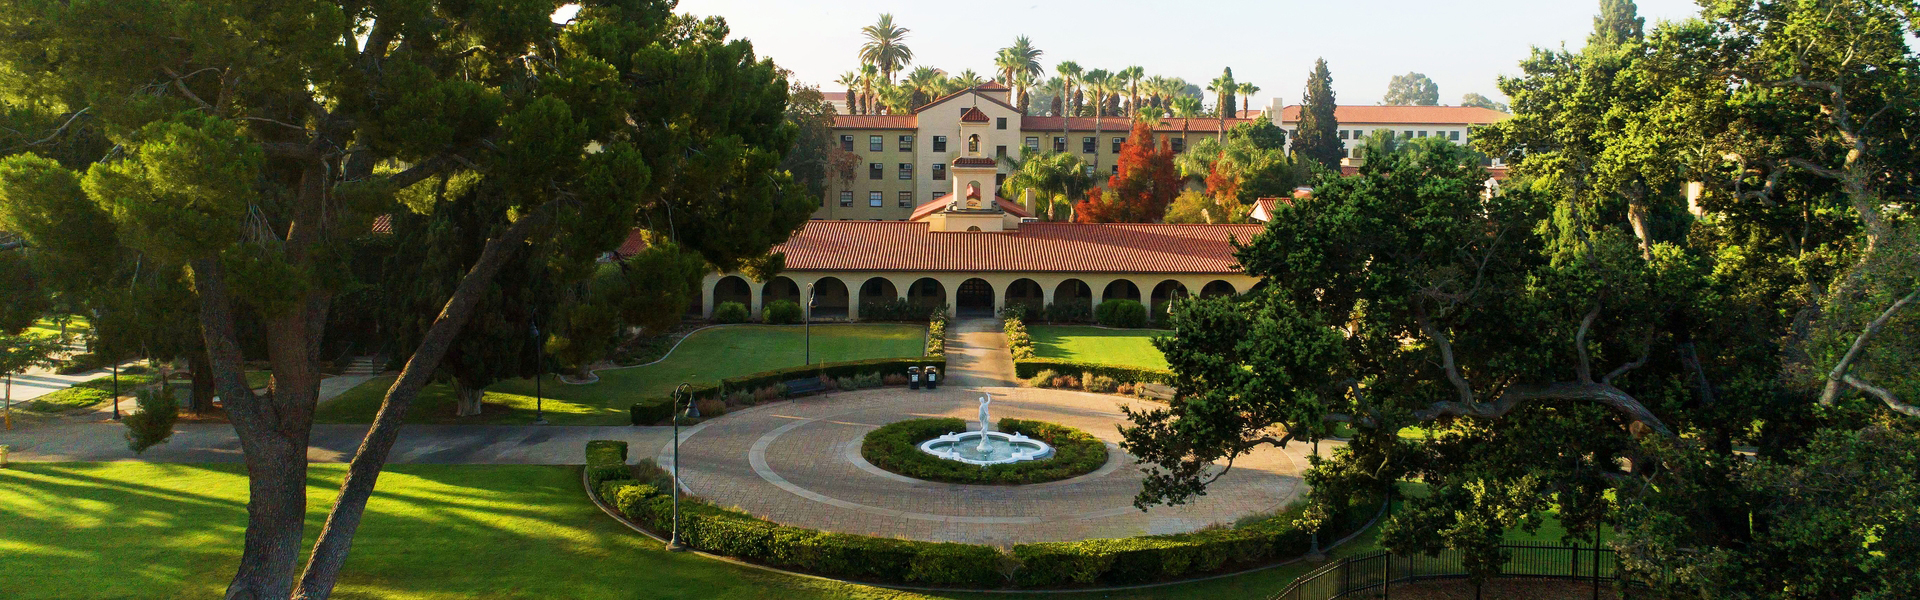 Get Familiar With Grad School  UC Santa Barbara Career Services